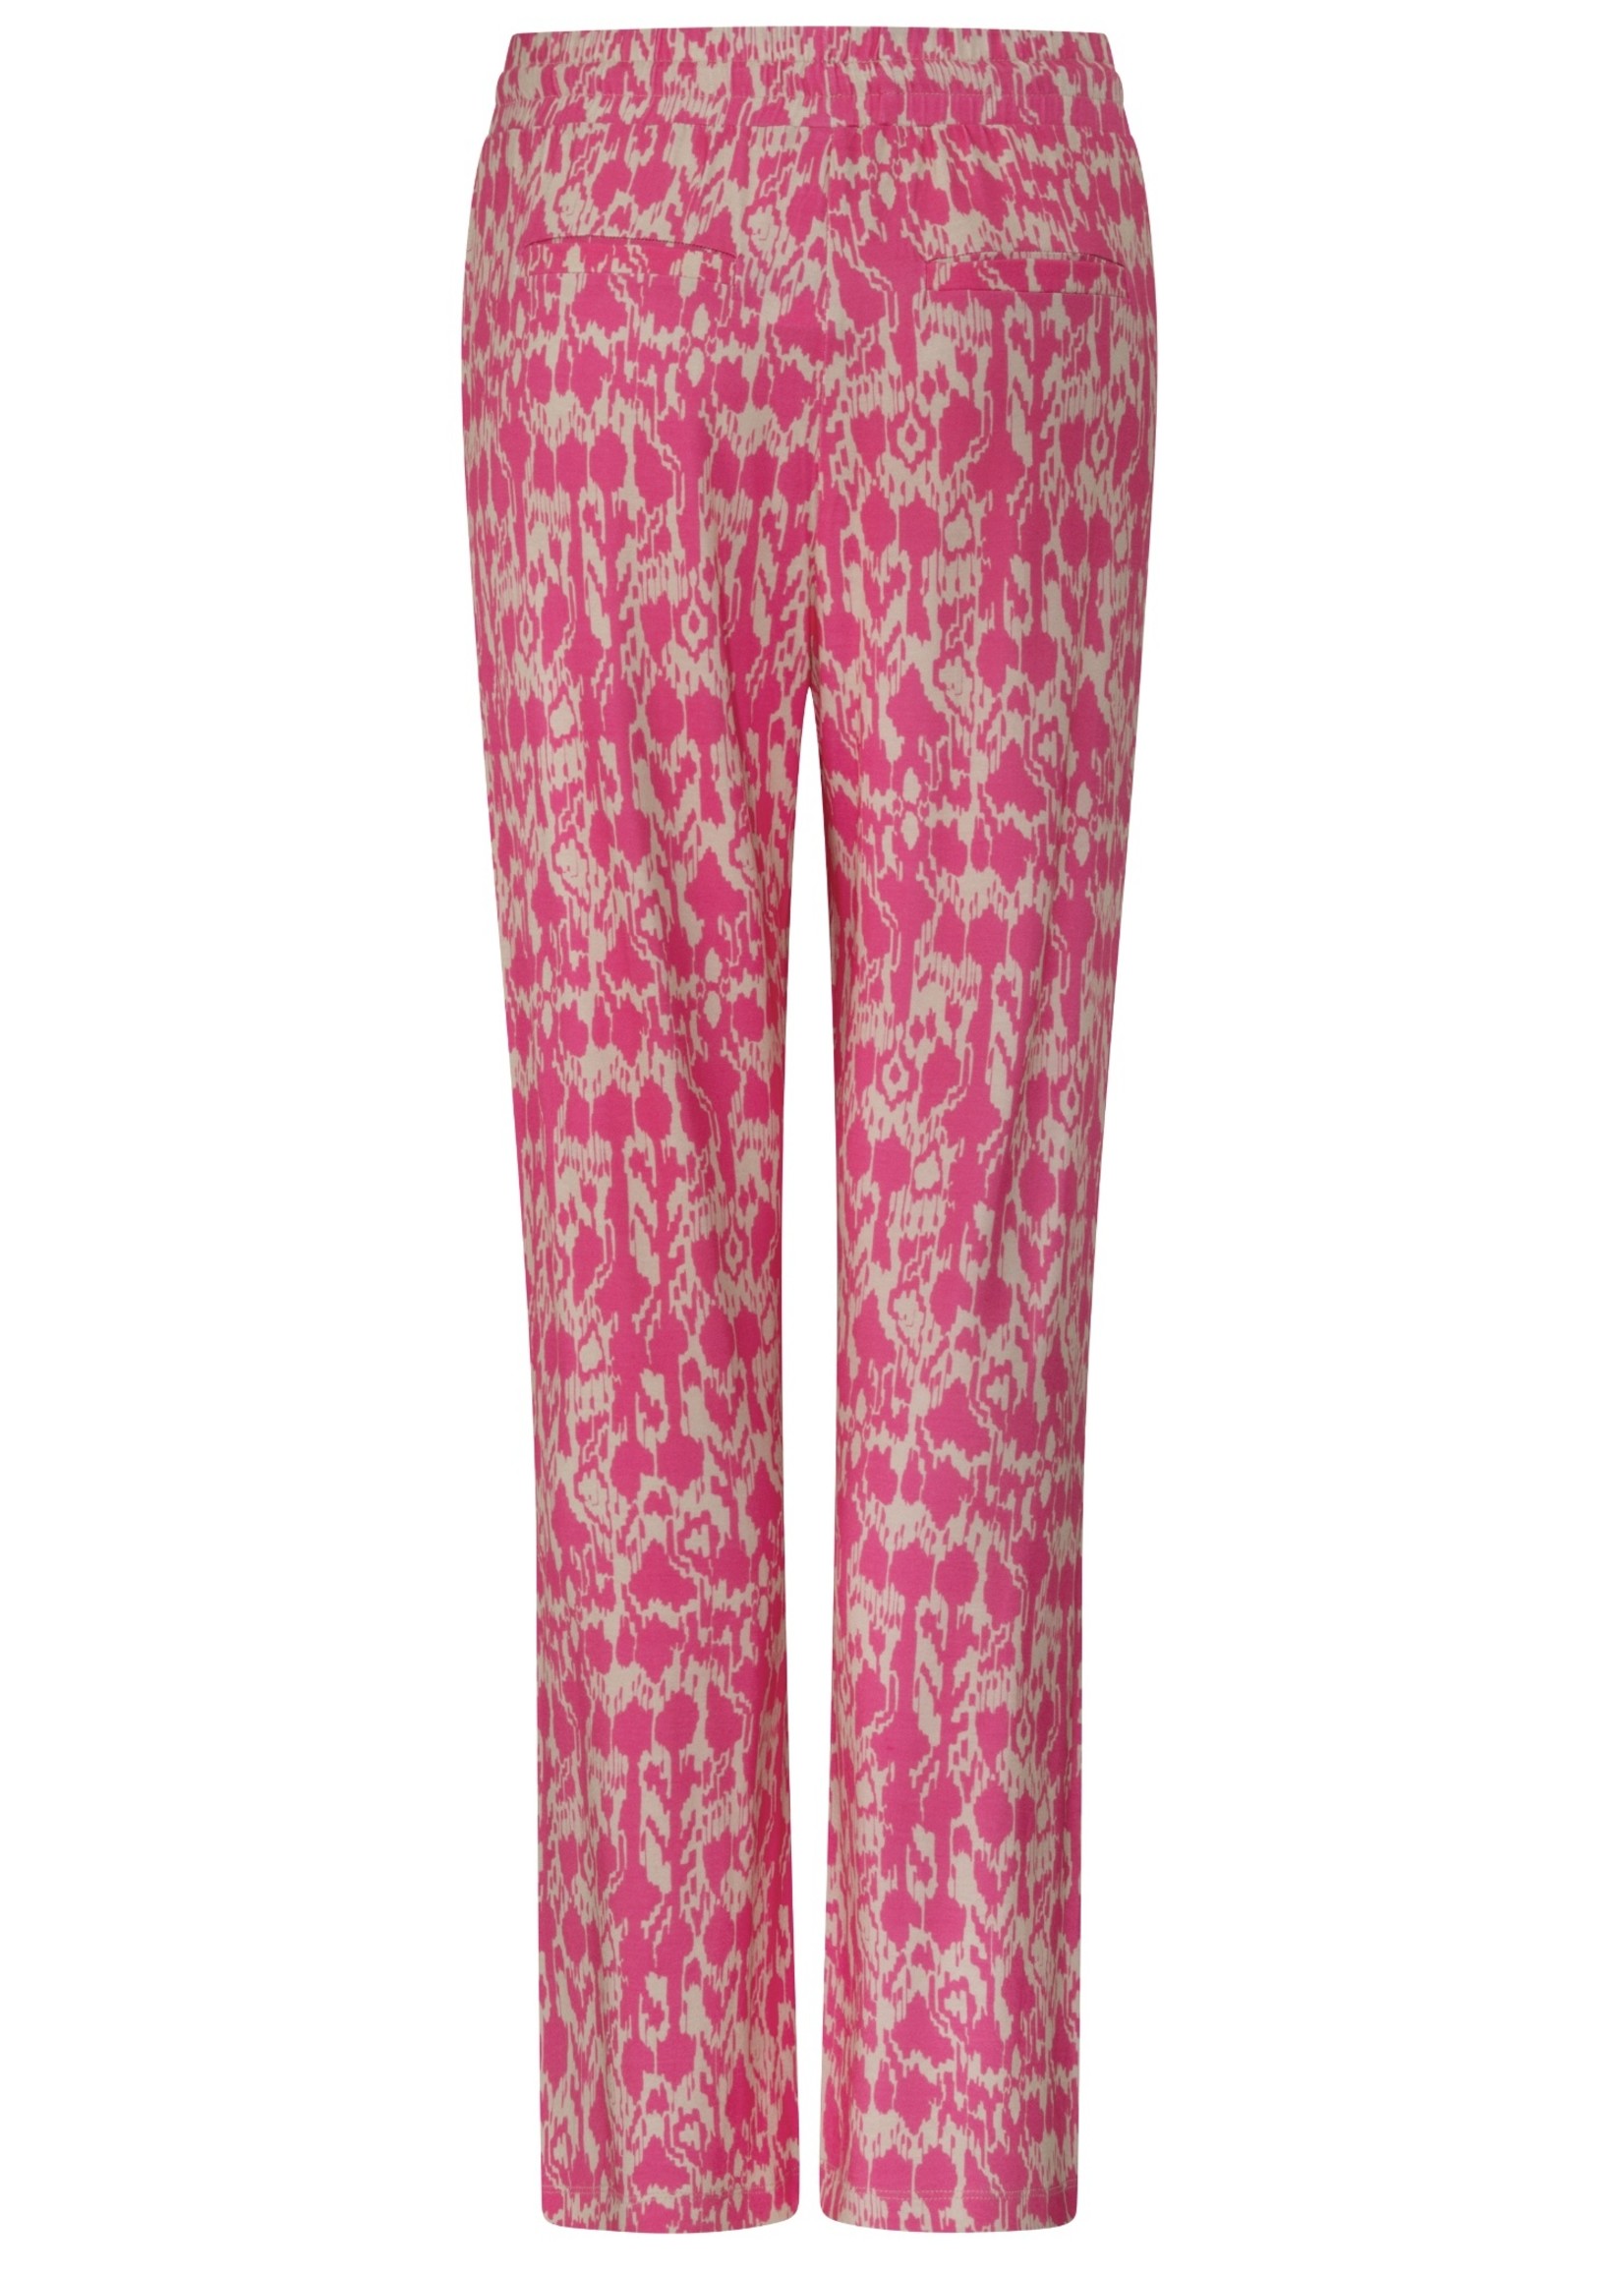 Zoso Zoso - Isa - Printed loose pant - Bright Pink/Sand